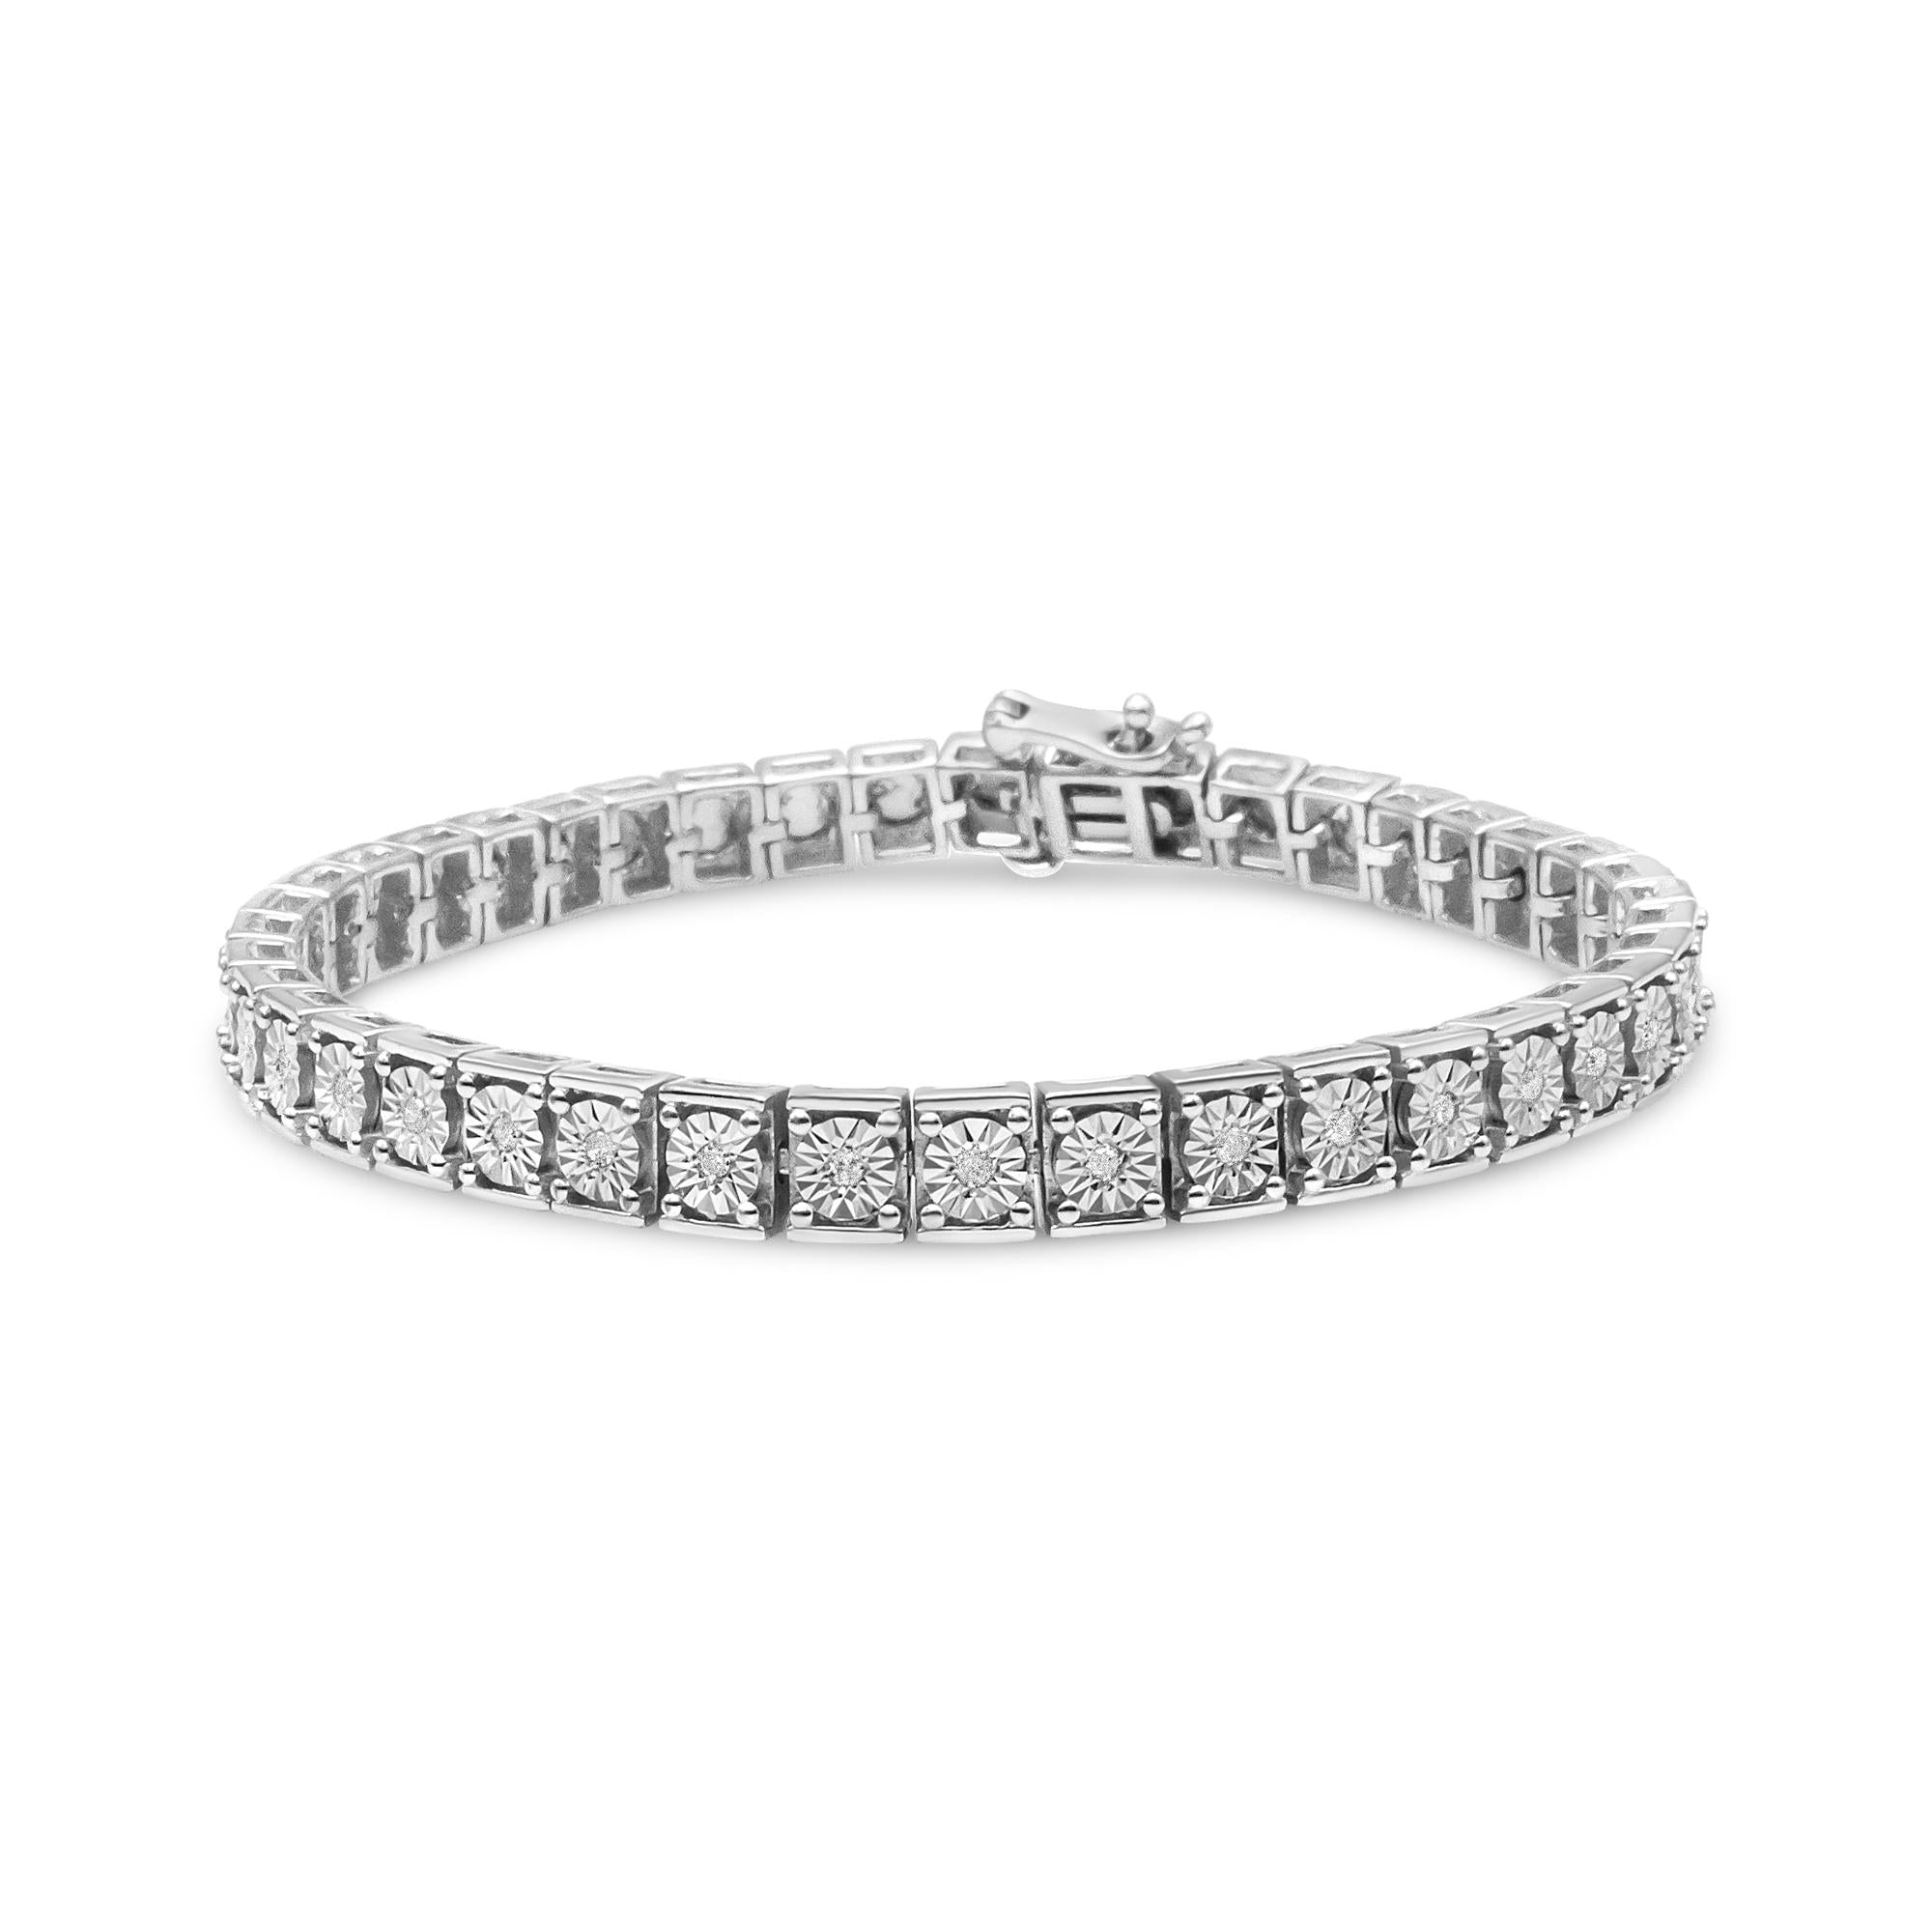 ''.925 Sterling Silver 1/4 Cttw Diamond Link Bracelet (I-J Color, I2-I3 Clarity) - Size 7.25''''''